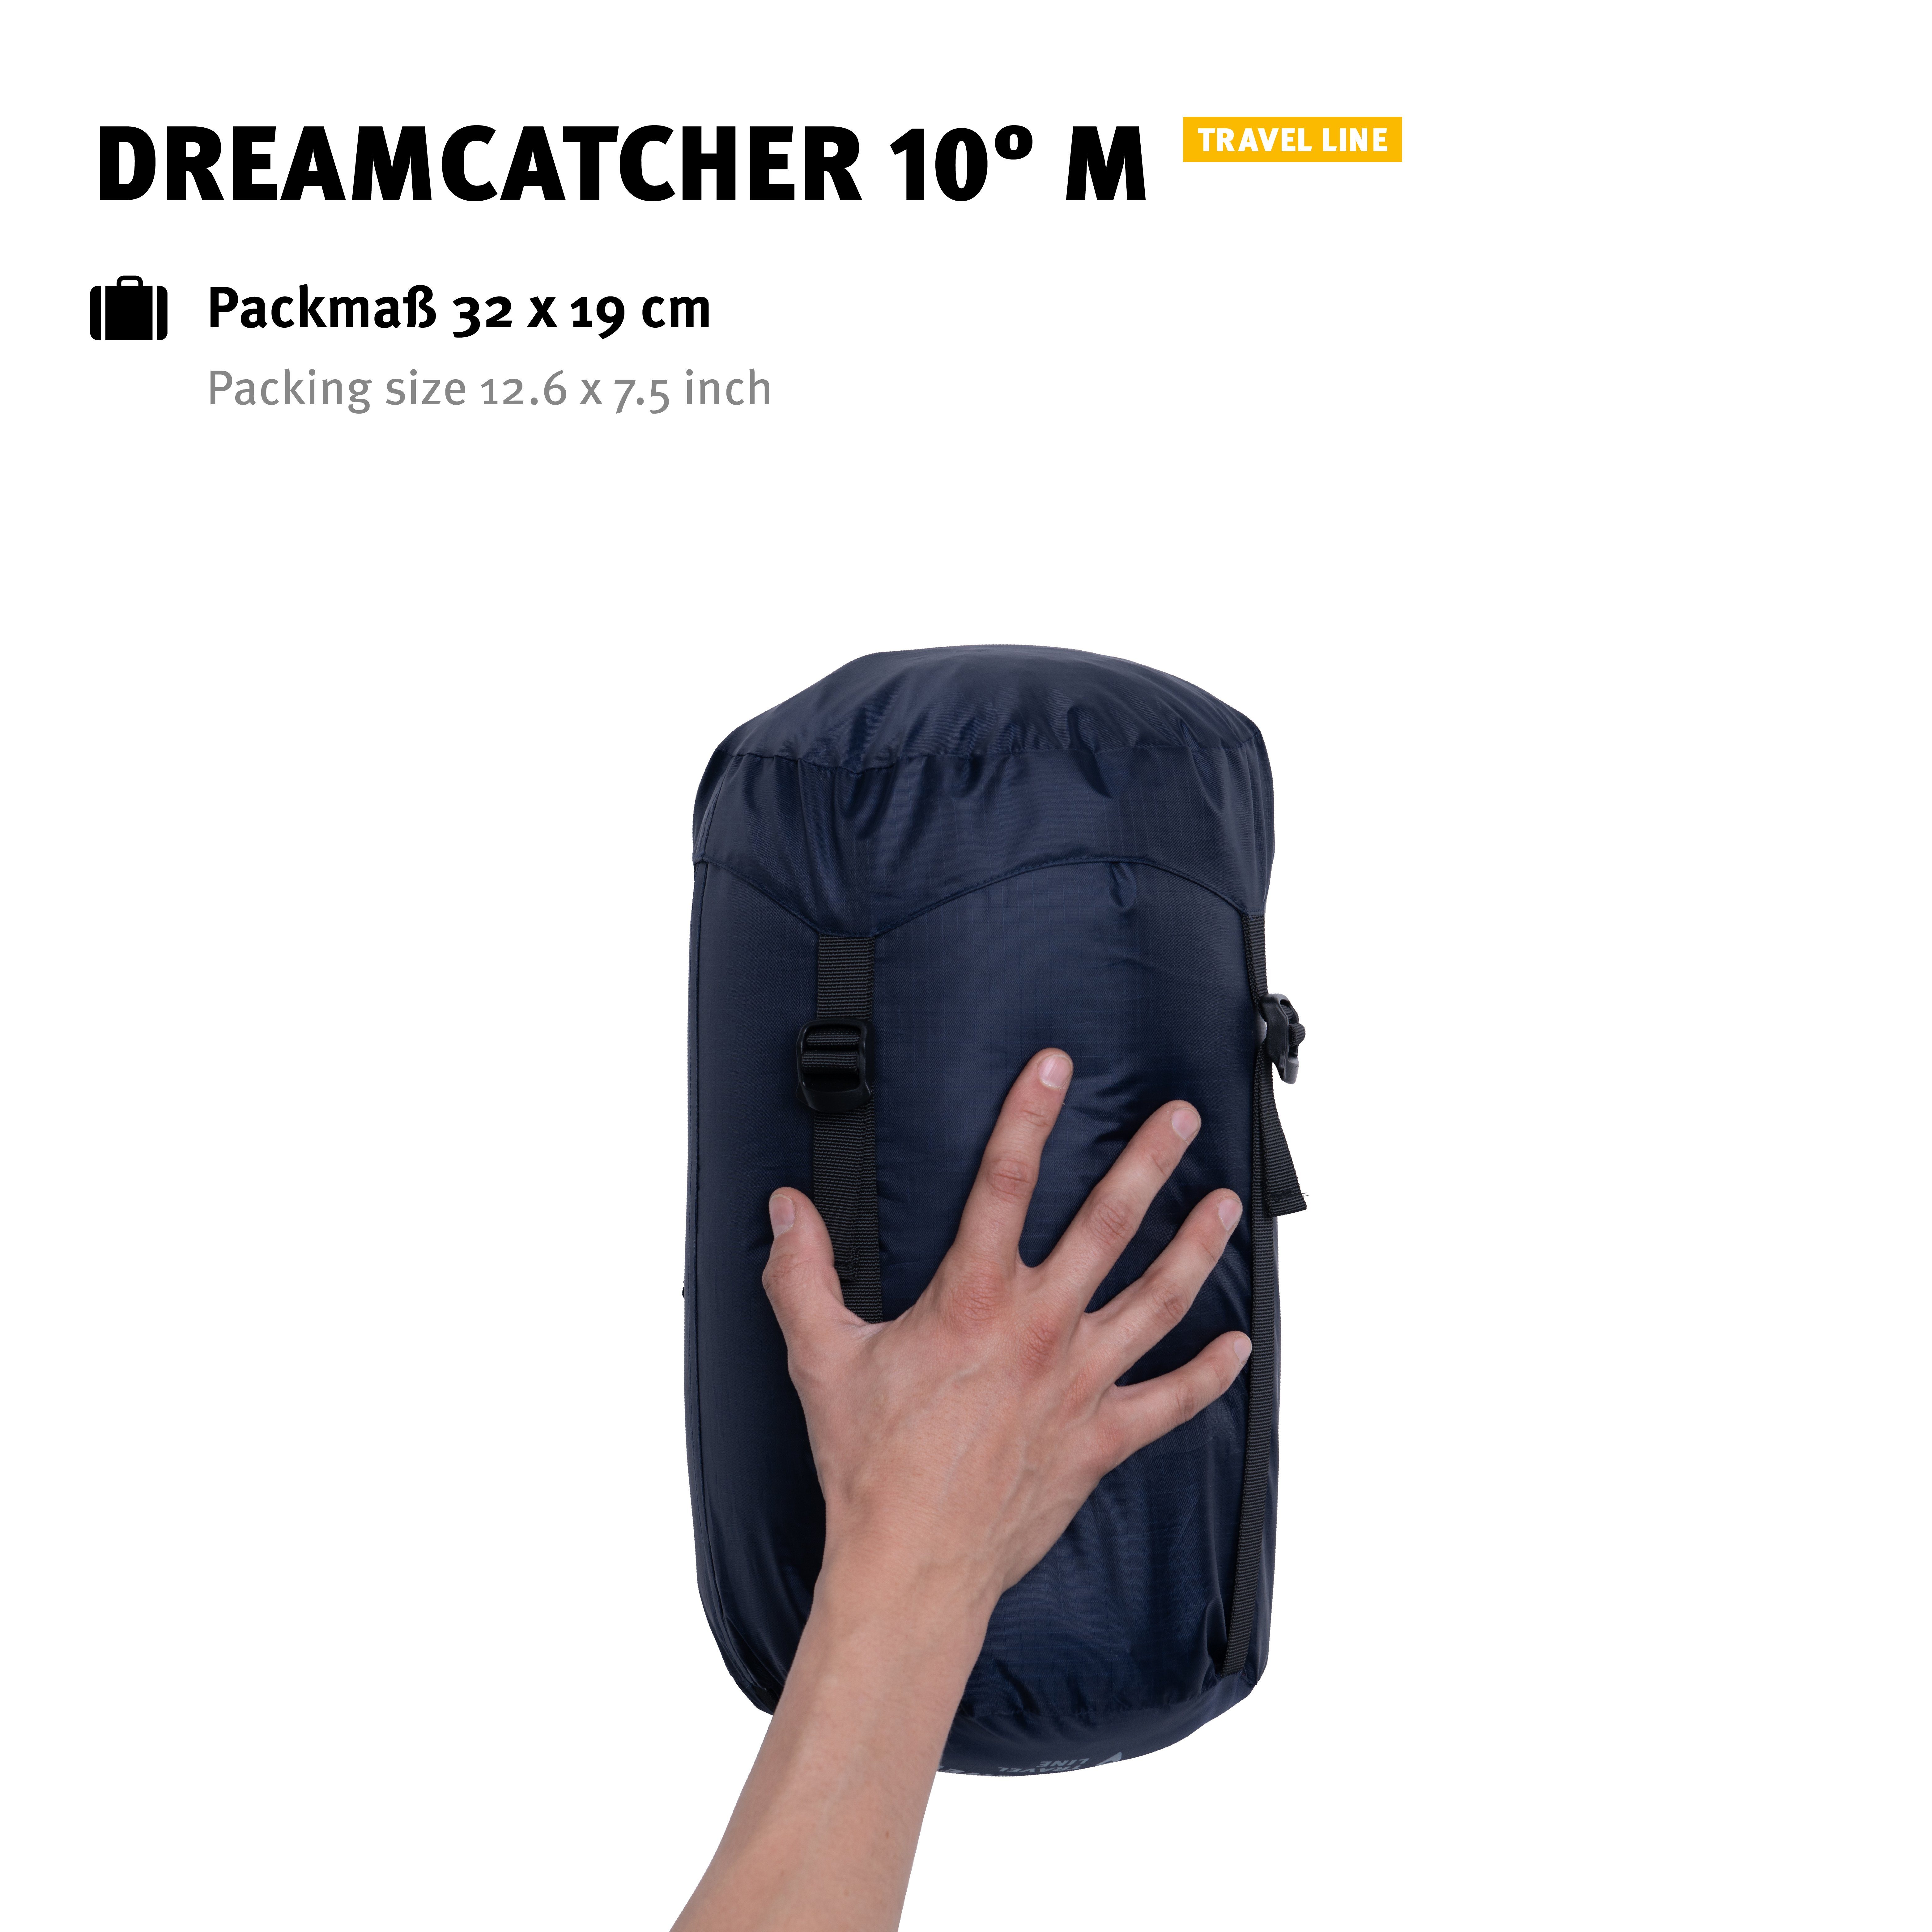 Deckenschlafsack Dreamcatcher Kapuze Kordelzug Tents 2-Wege-Reißverschluss, Wechsel M (2023), 10° Innenfach, mit